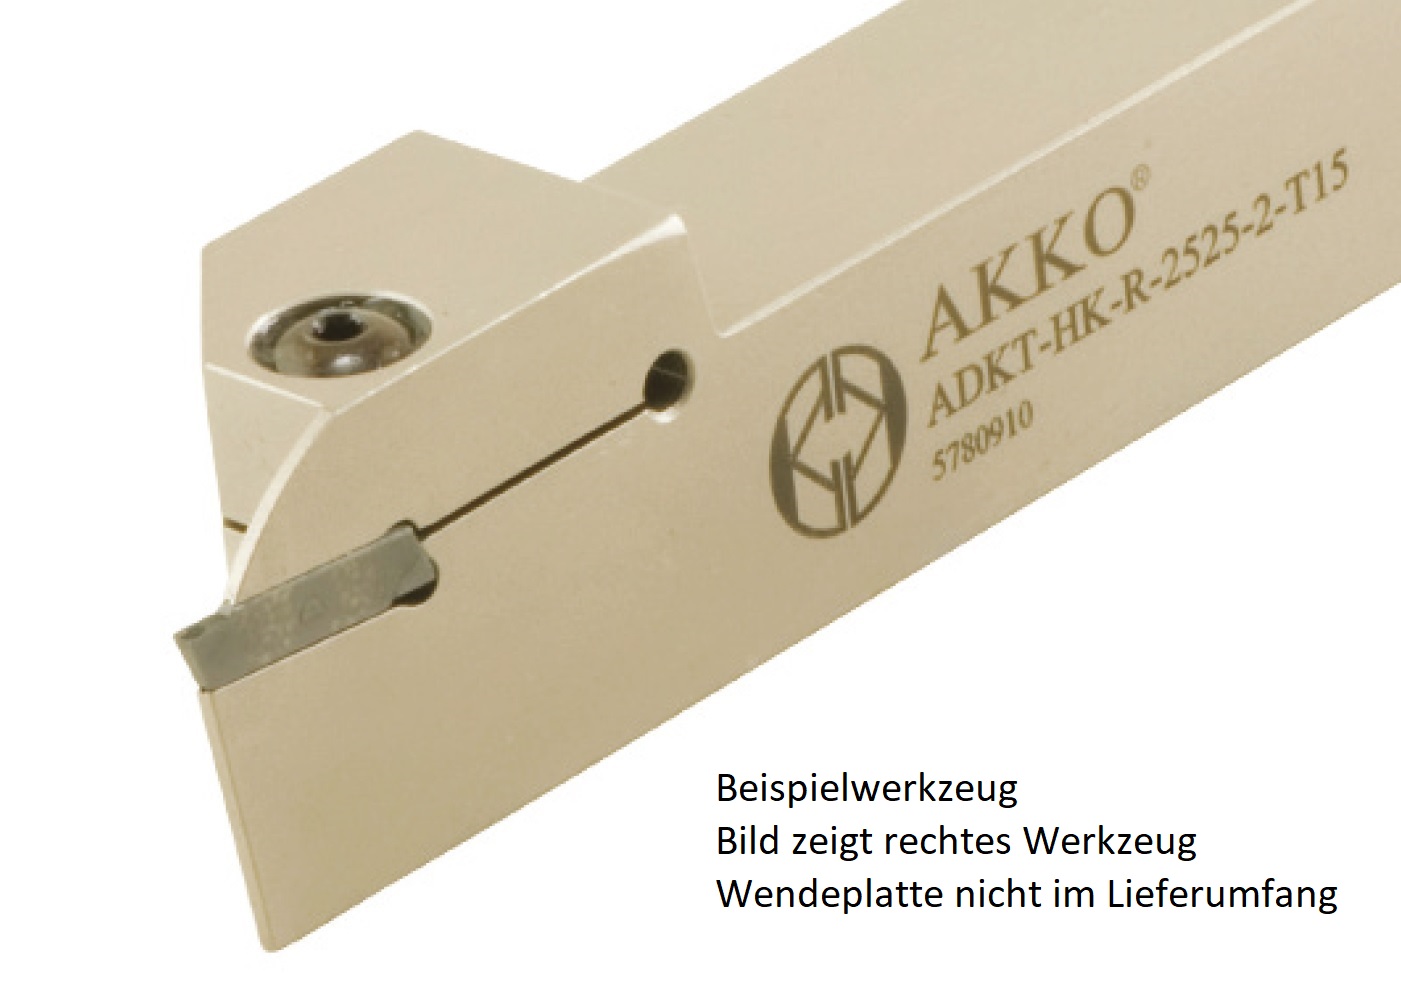 Abstechhalter ADKT-HK-L-1616-2-T15